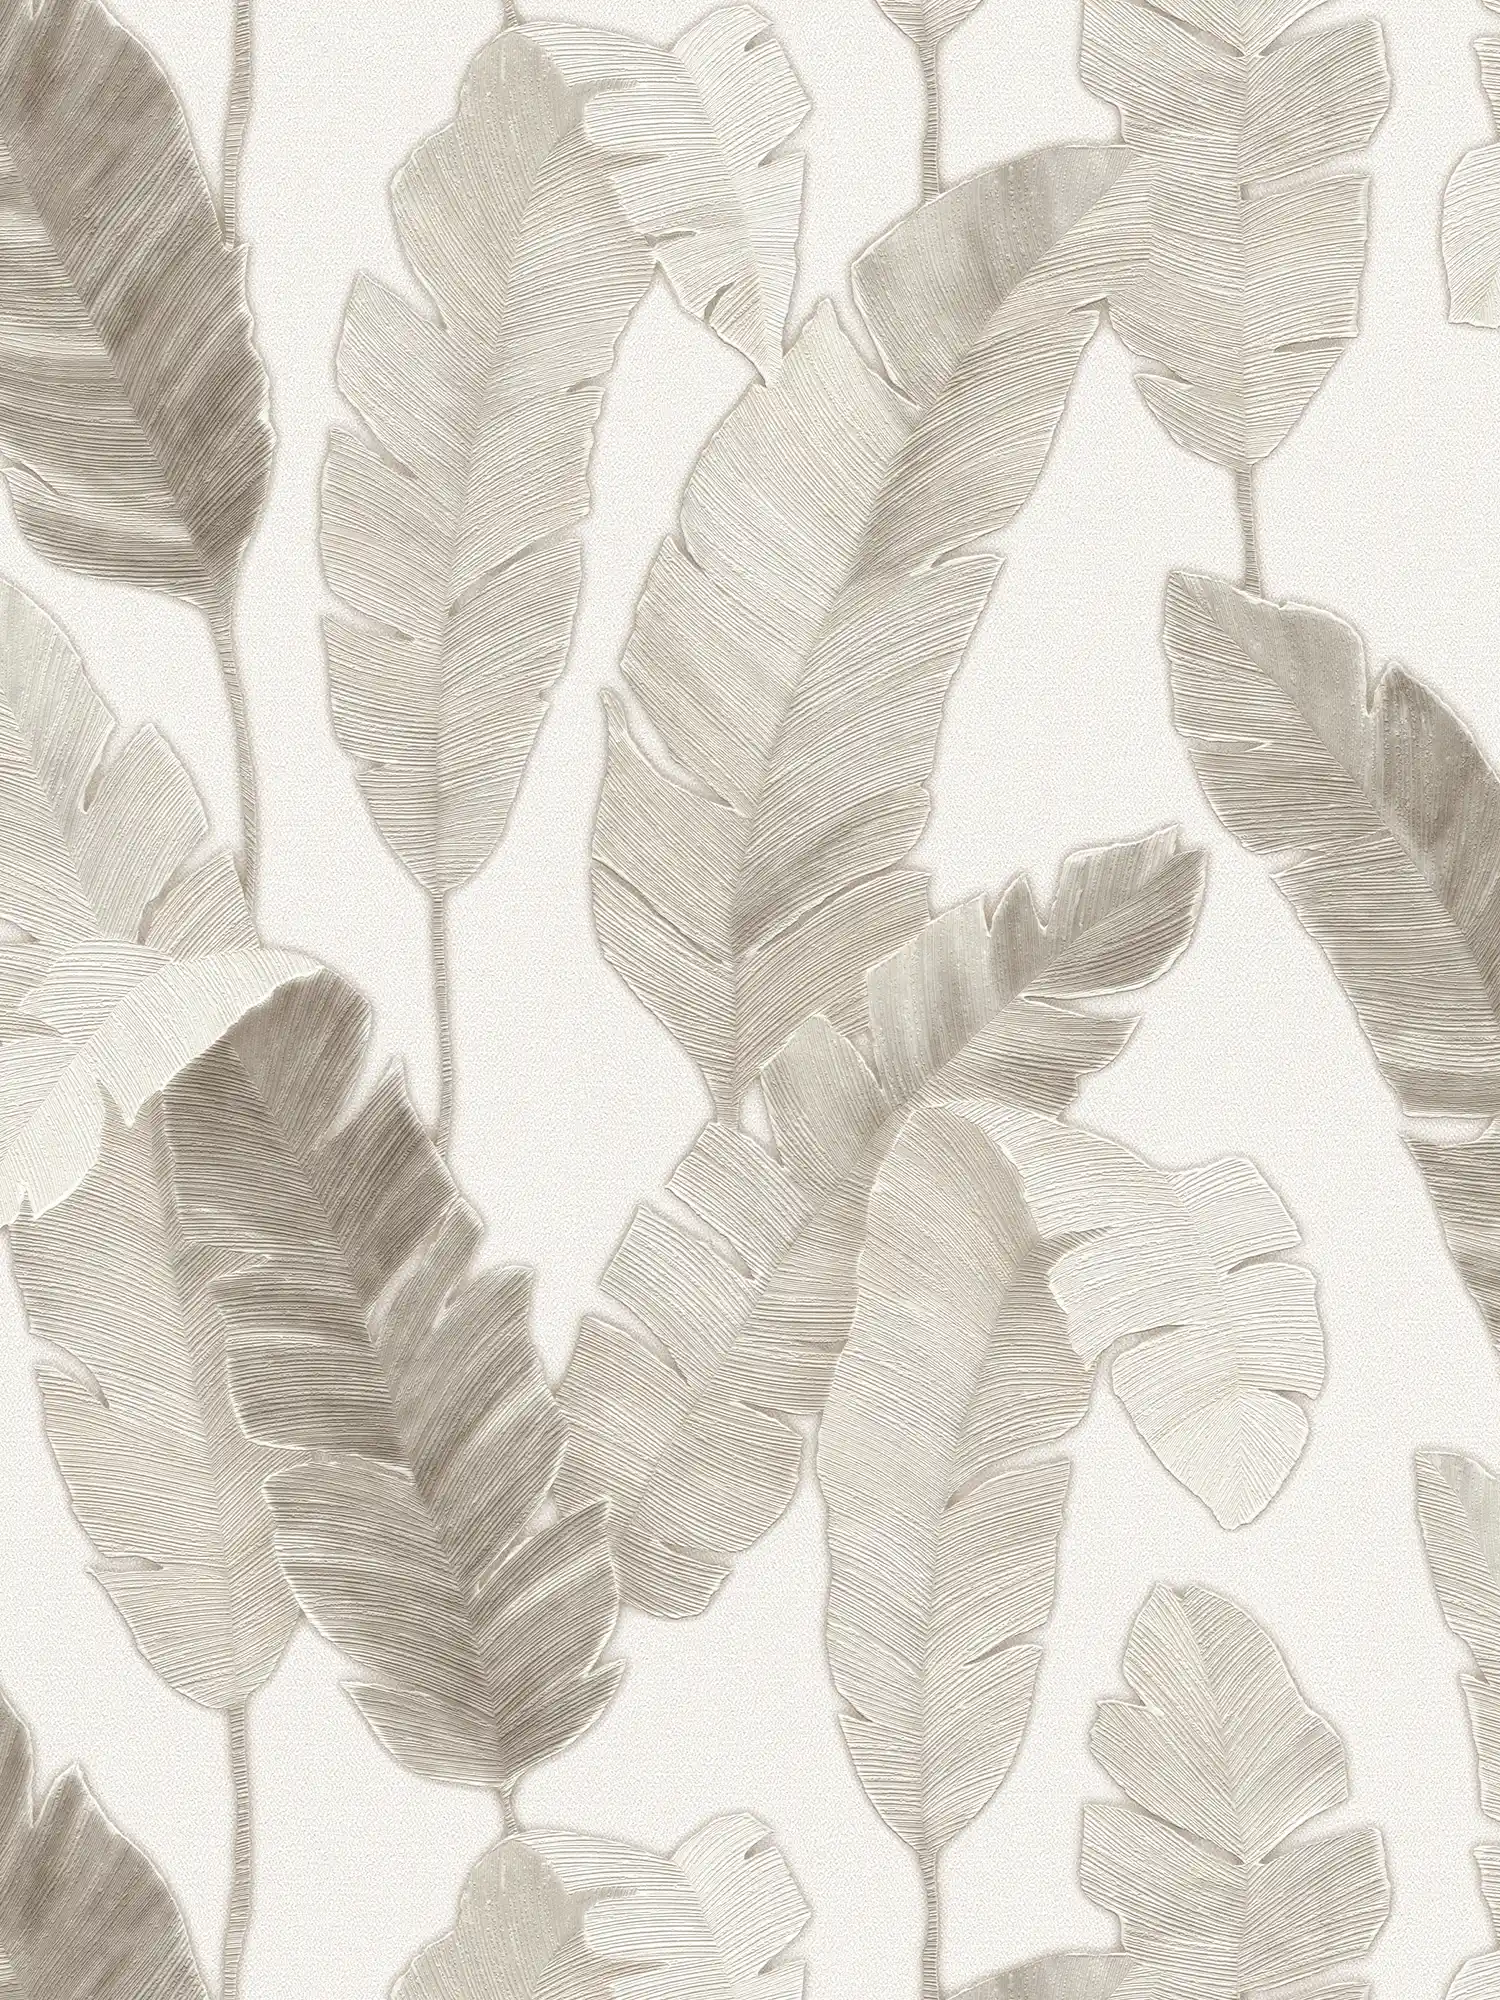 Carta da parati in tessuto non tessuto con sottili foglie di palma - bianco, beige, grigio
